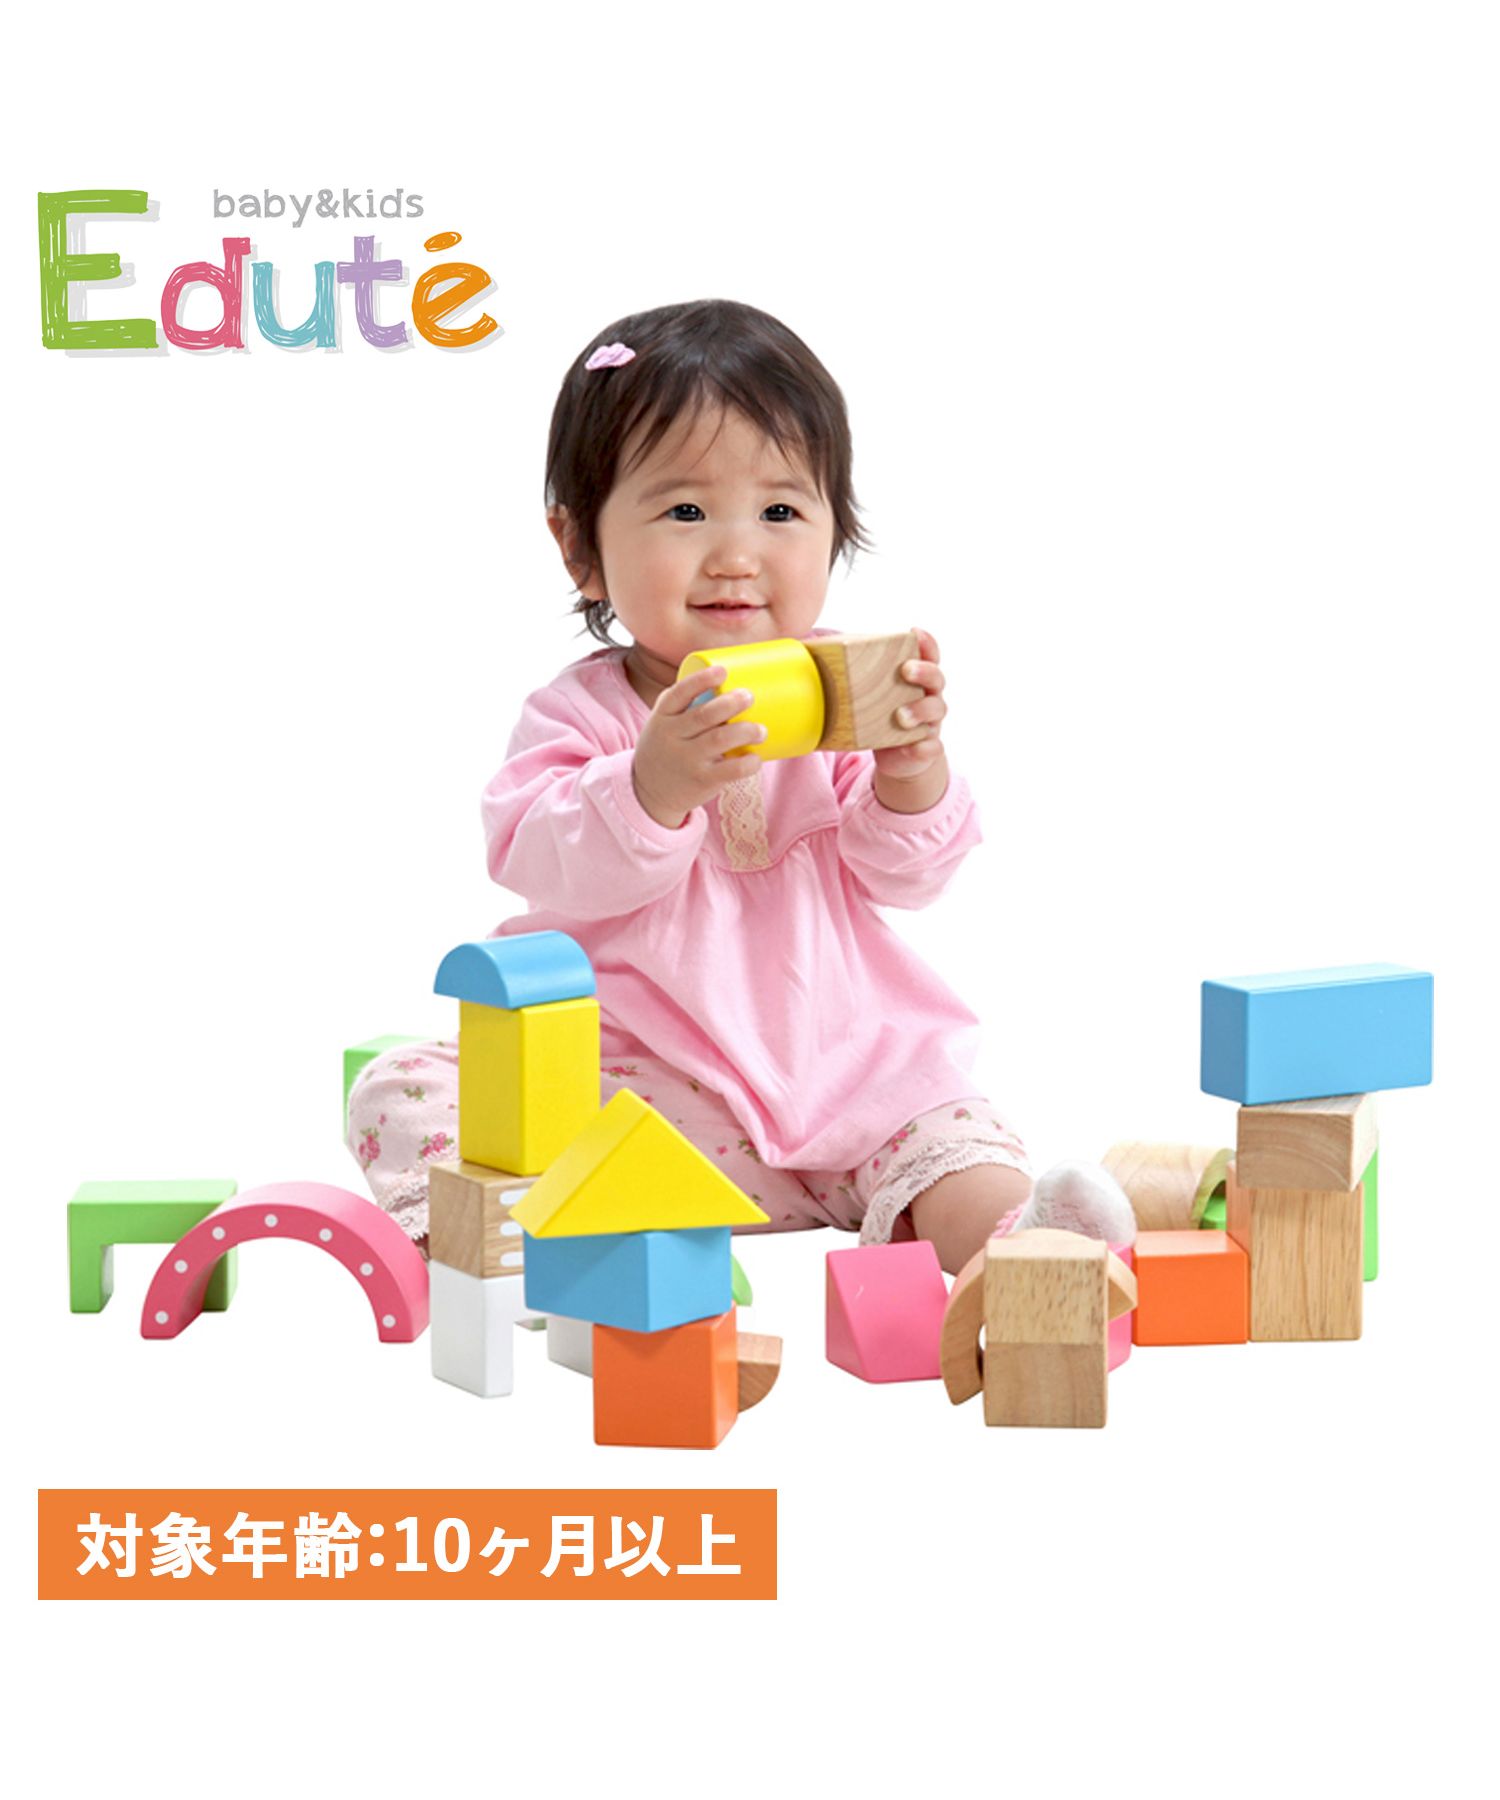 エデュテ Edute 積み木 木のおもちゃ 知育玩具 10ヶ月から対応 